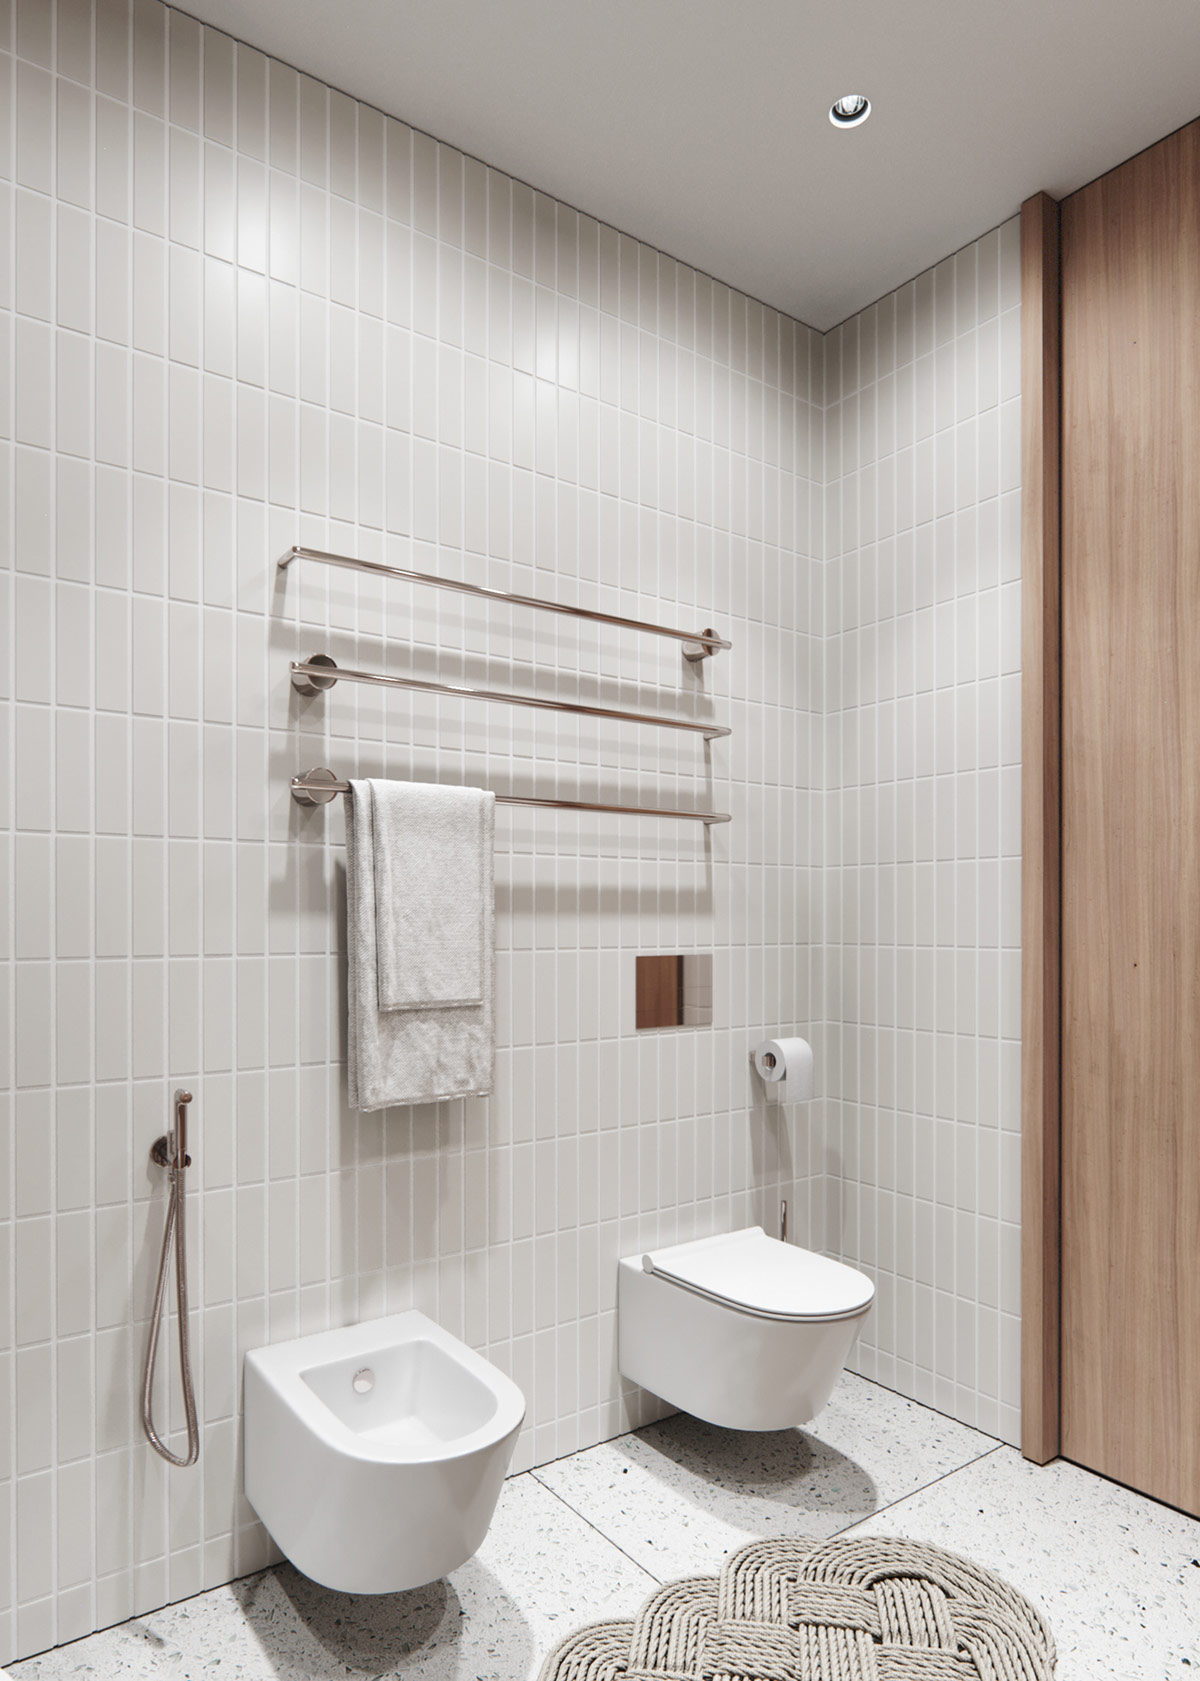 Những chiếc thanh ngang bằng kim loại treo khăn tắm cùng bồn toilet gắn tường nhằm giải phóng diện tích mặt sàn cho không gian thoáng đãng hơn.